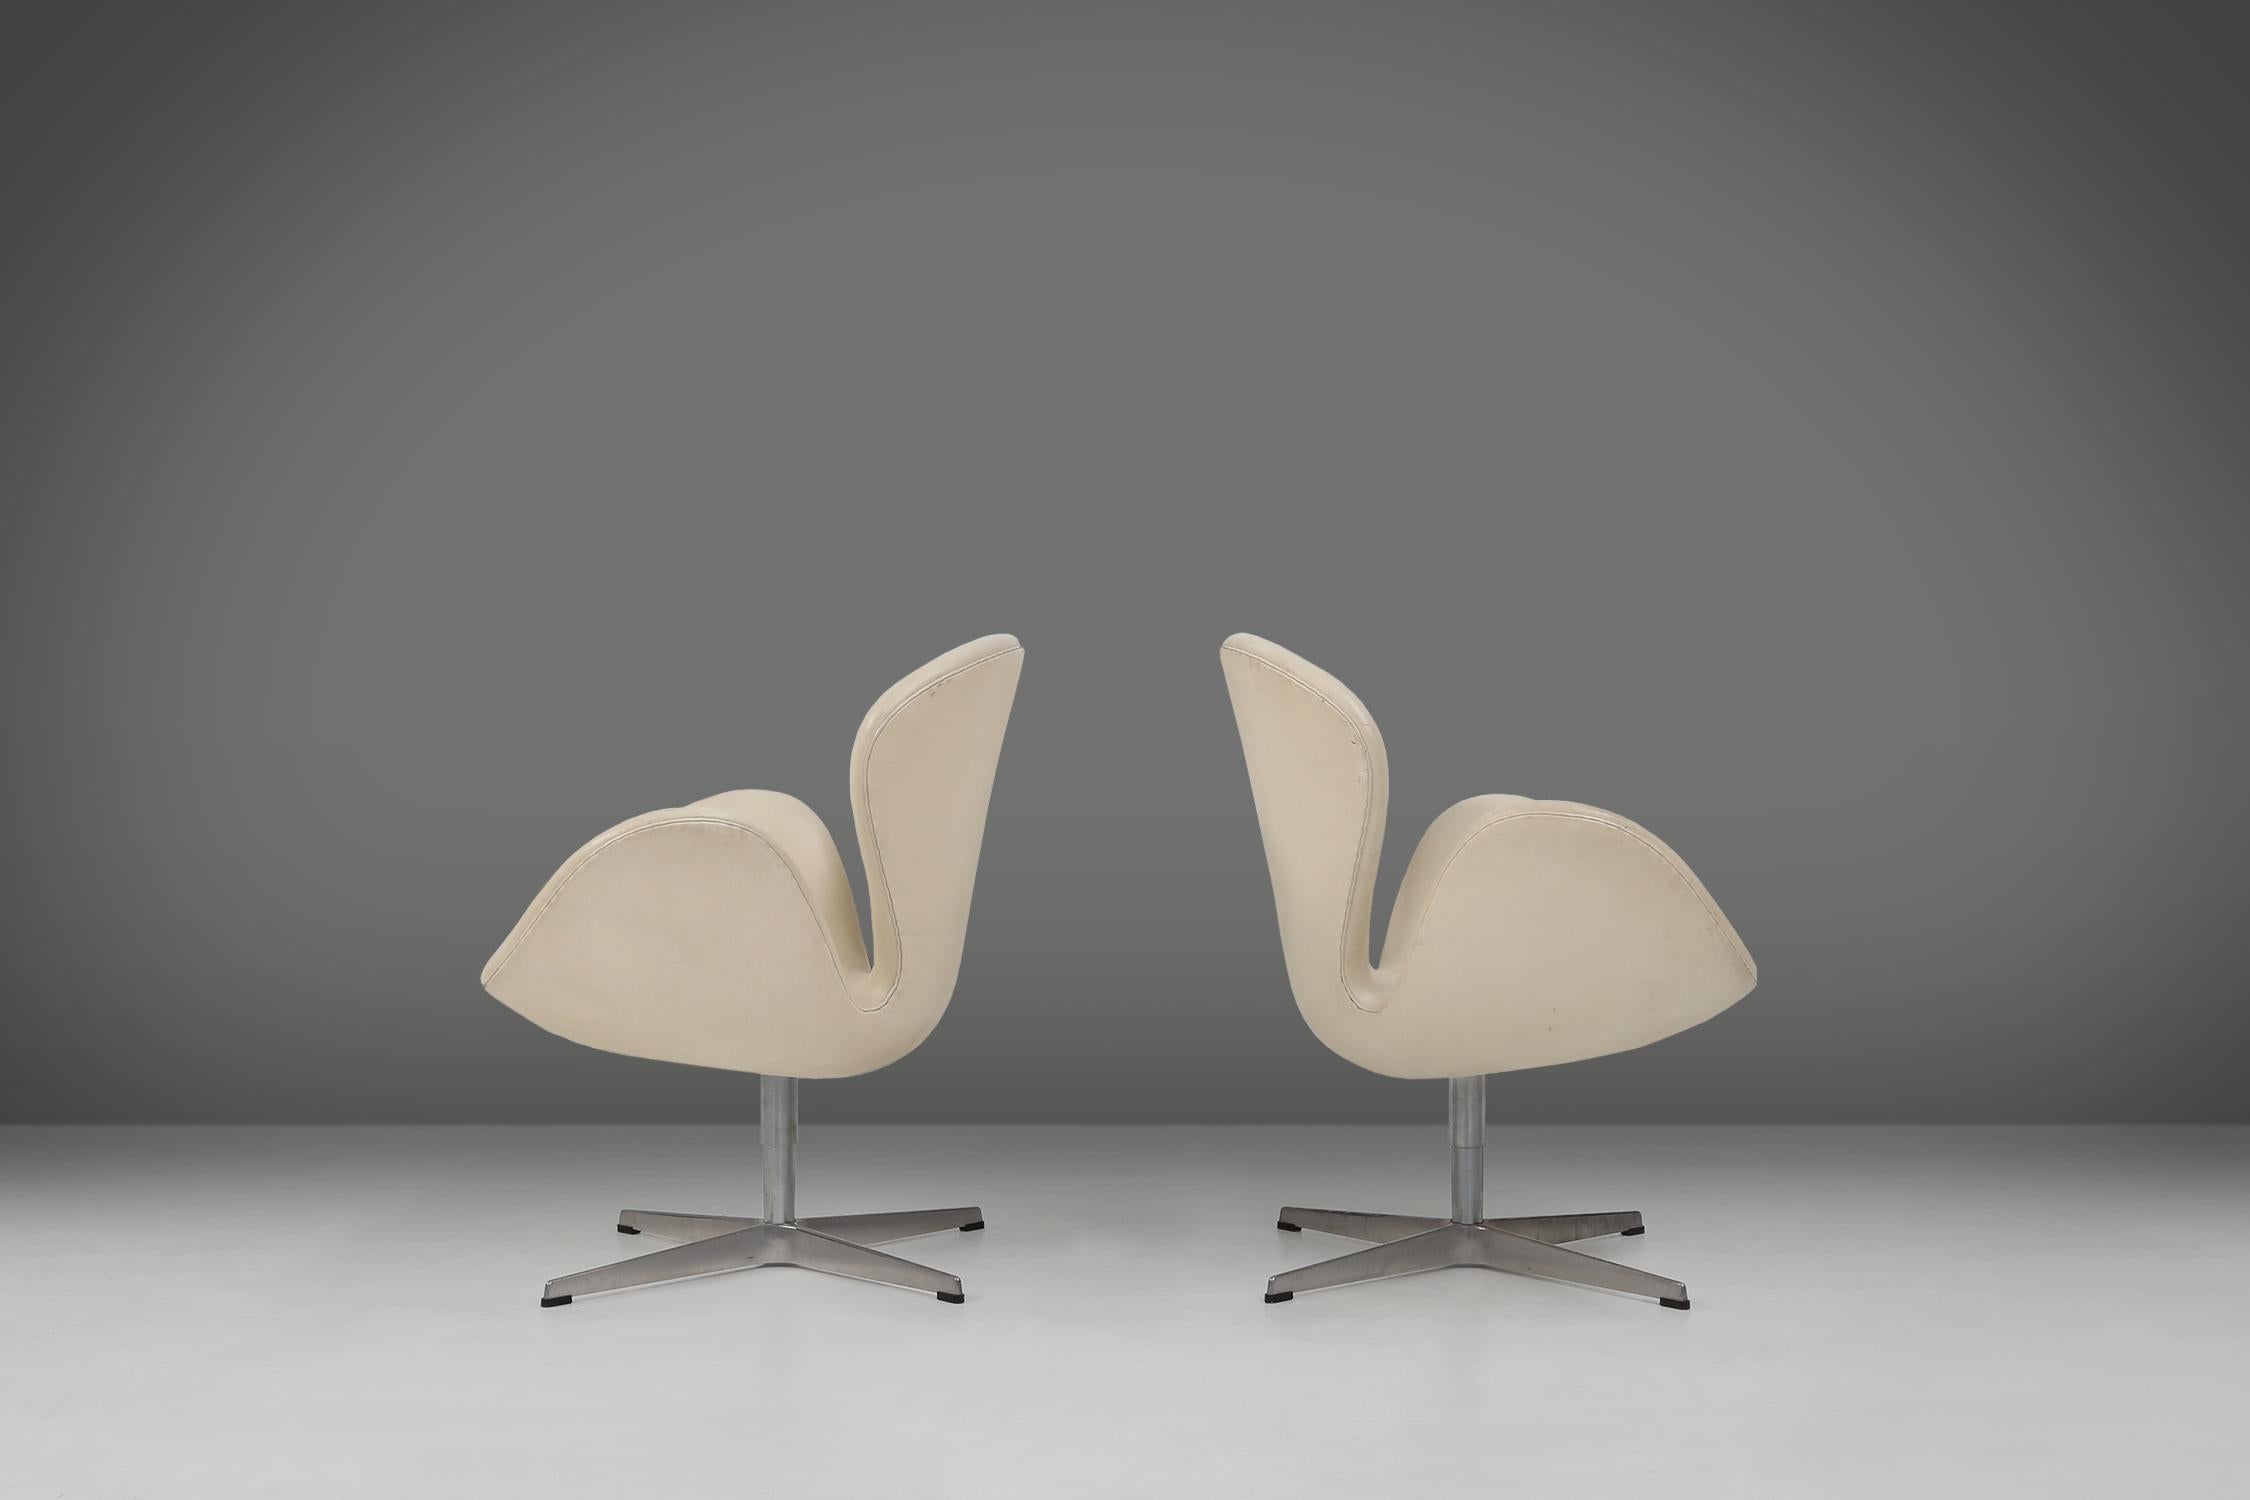 La chaise Swan est un modèle emblématique du célèbre architecte et designer danois Arne Jacobsen. Il a conçu cette chaise en 1958 pour le hall et le salon de l'hôtel SAS Royal à Copenhague. La chaise n'a pas de lignes droites, mais une forme